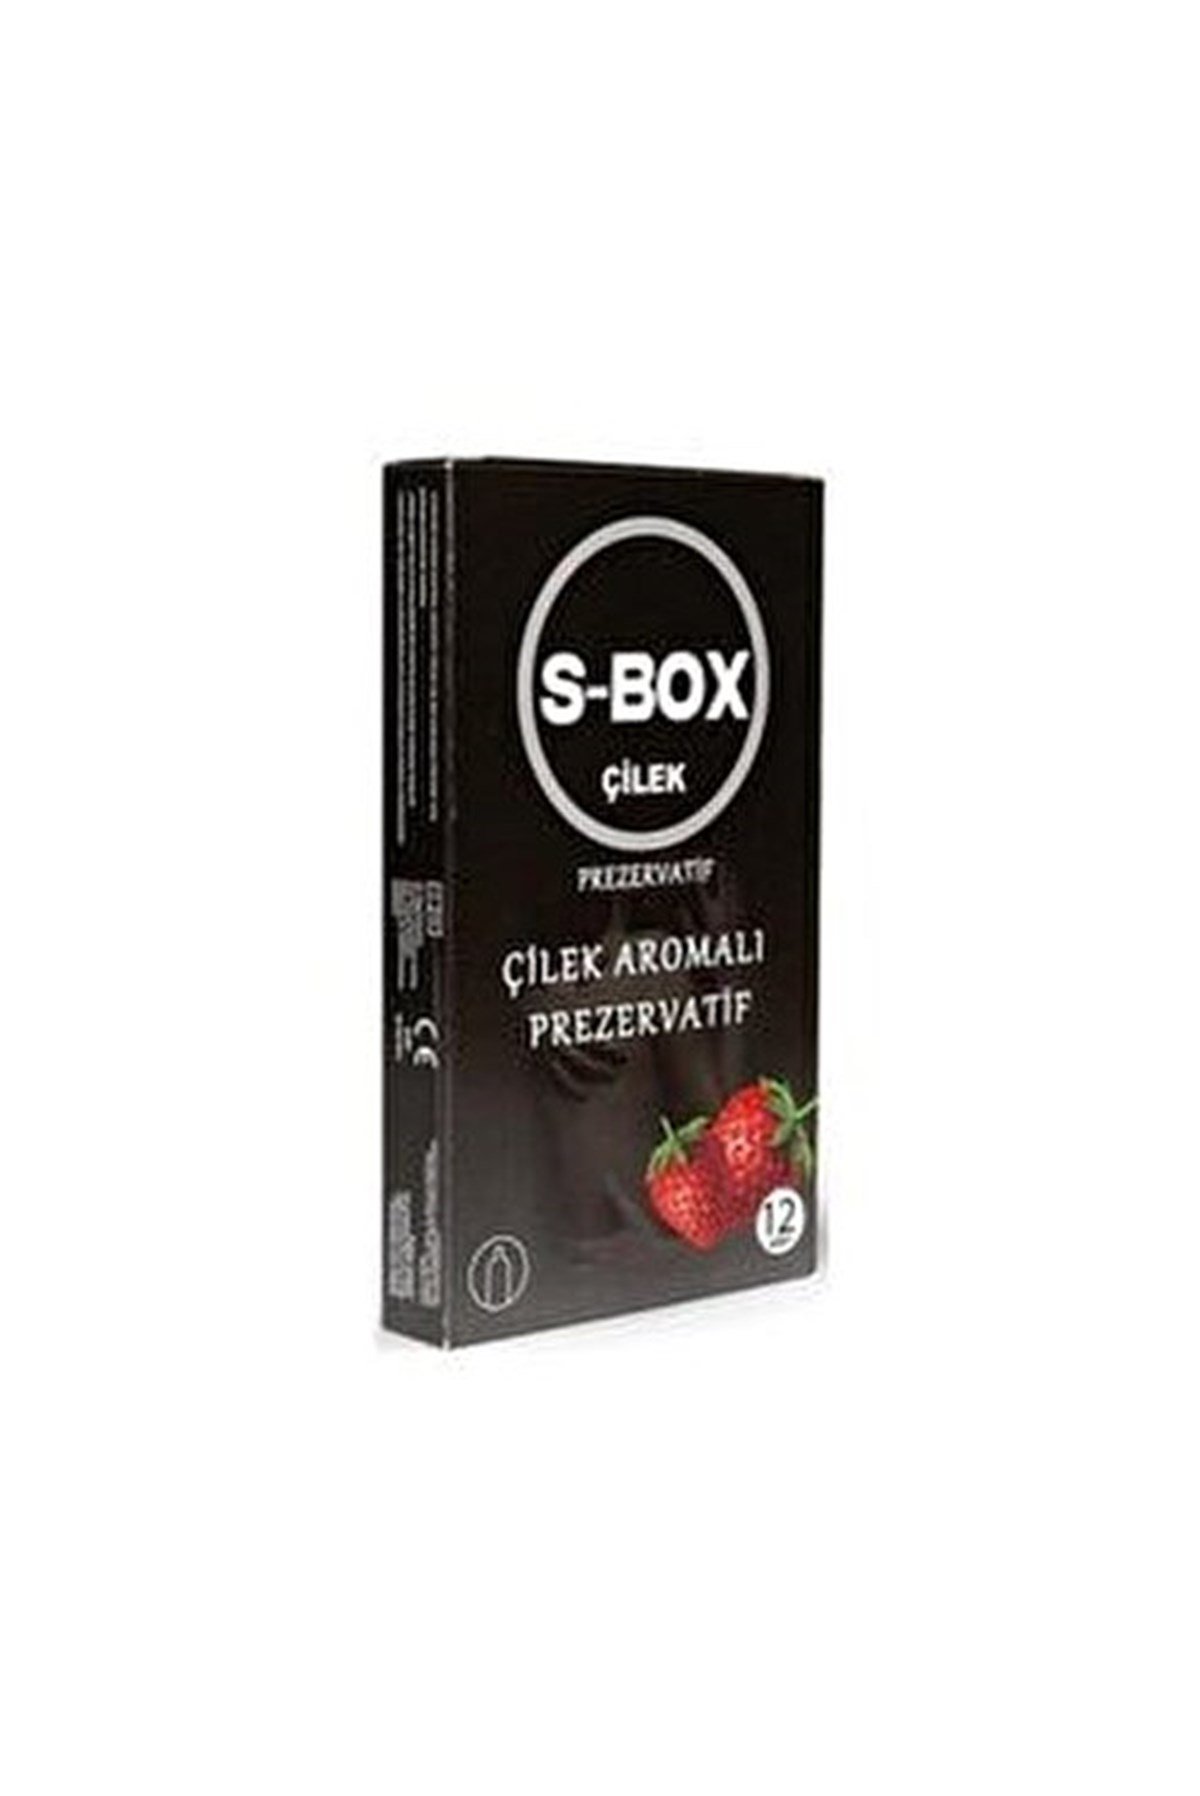 S-Box Çilekli Latex Prezervatif 12'li DepoEczanem.com | Dermokozmetik Cilt  & Vücut Bakımı, Vitamin & Mineral – Takviye Edici Gıda ve Reçetesiz Sağlık  Ürünleri